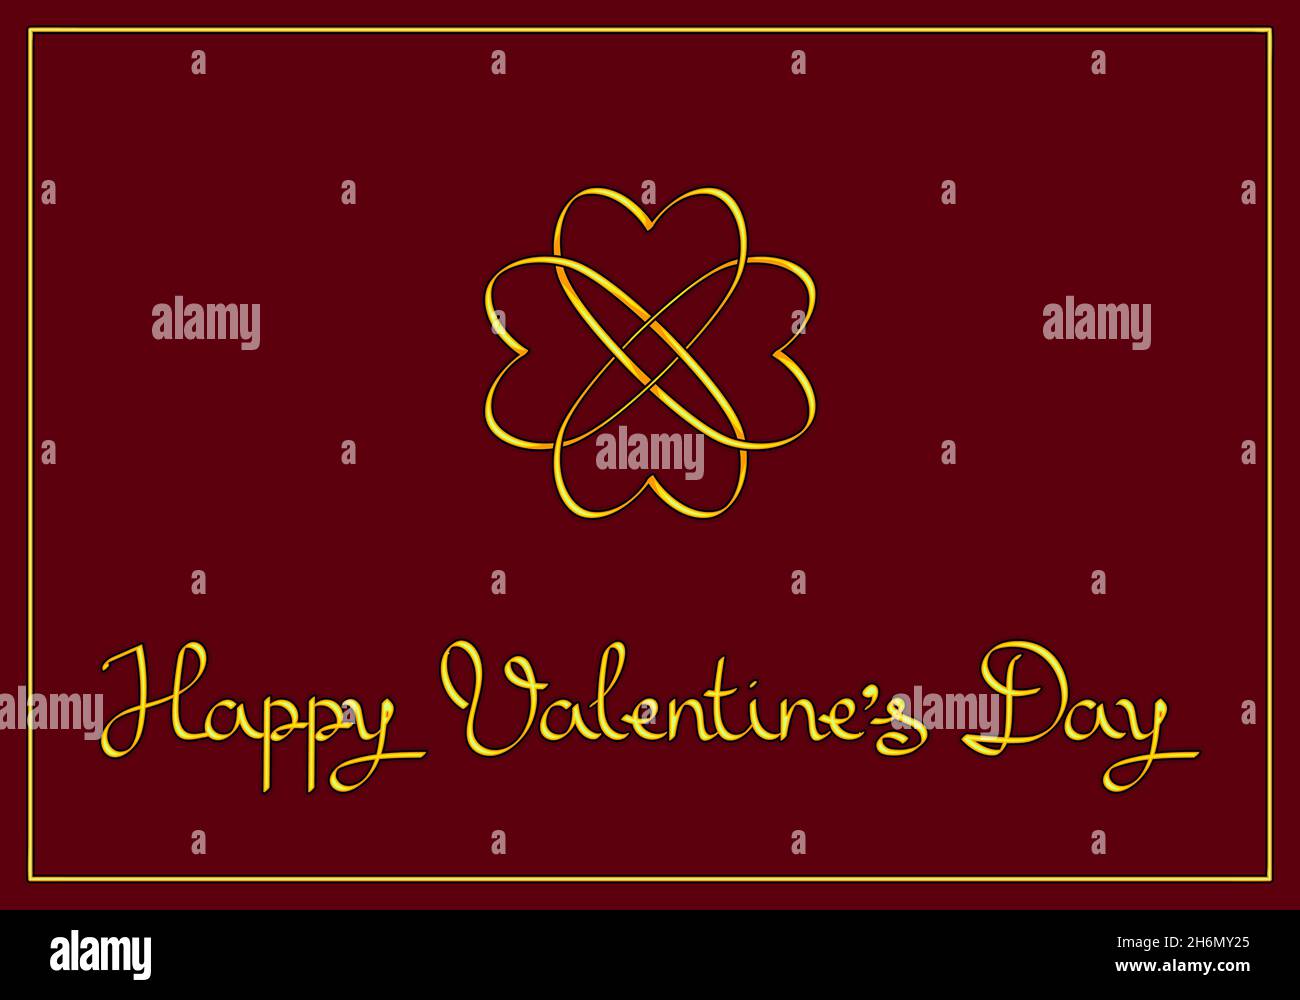 Elegante carta di San Valentino: Un fiore di cuori dorati intrecciati e l'iscrizione su sfondo borgogna. Illustrazione Vettoriale